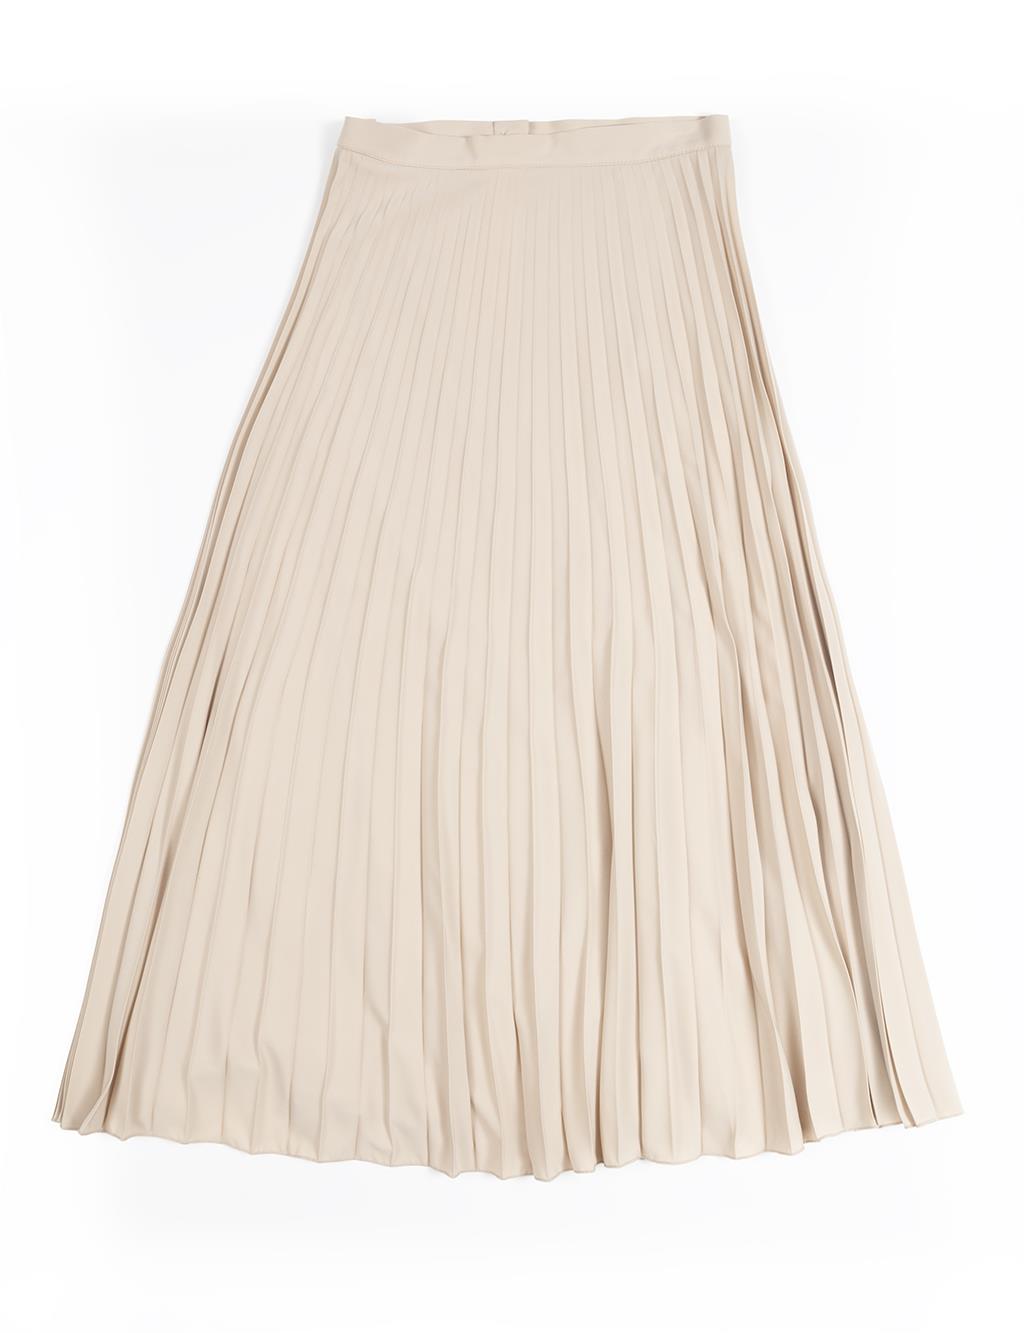 Плиссированная юбка на пуговицах цвета бежевого песка Kayra плиссированная юбка на пуговицах цвета бежевого песка kayra